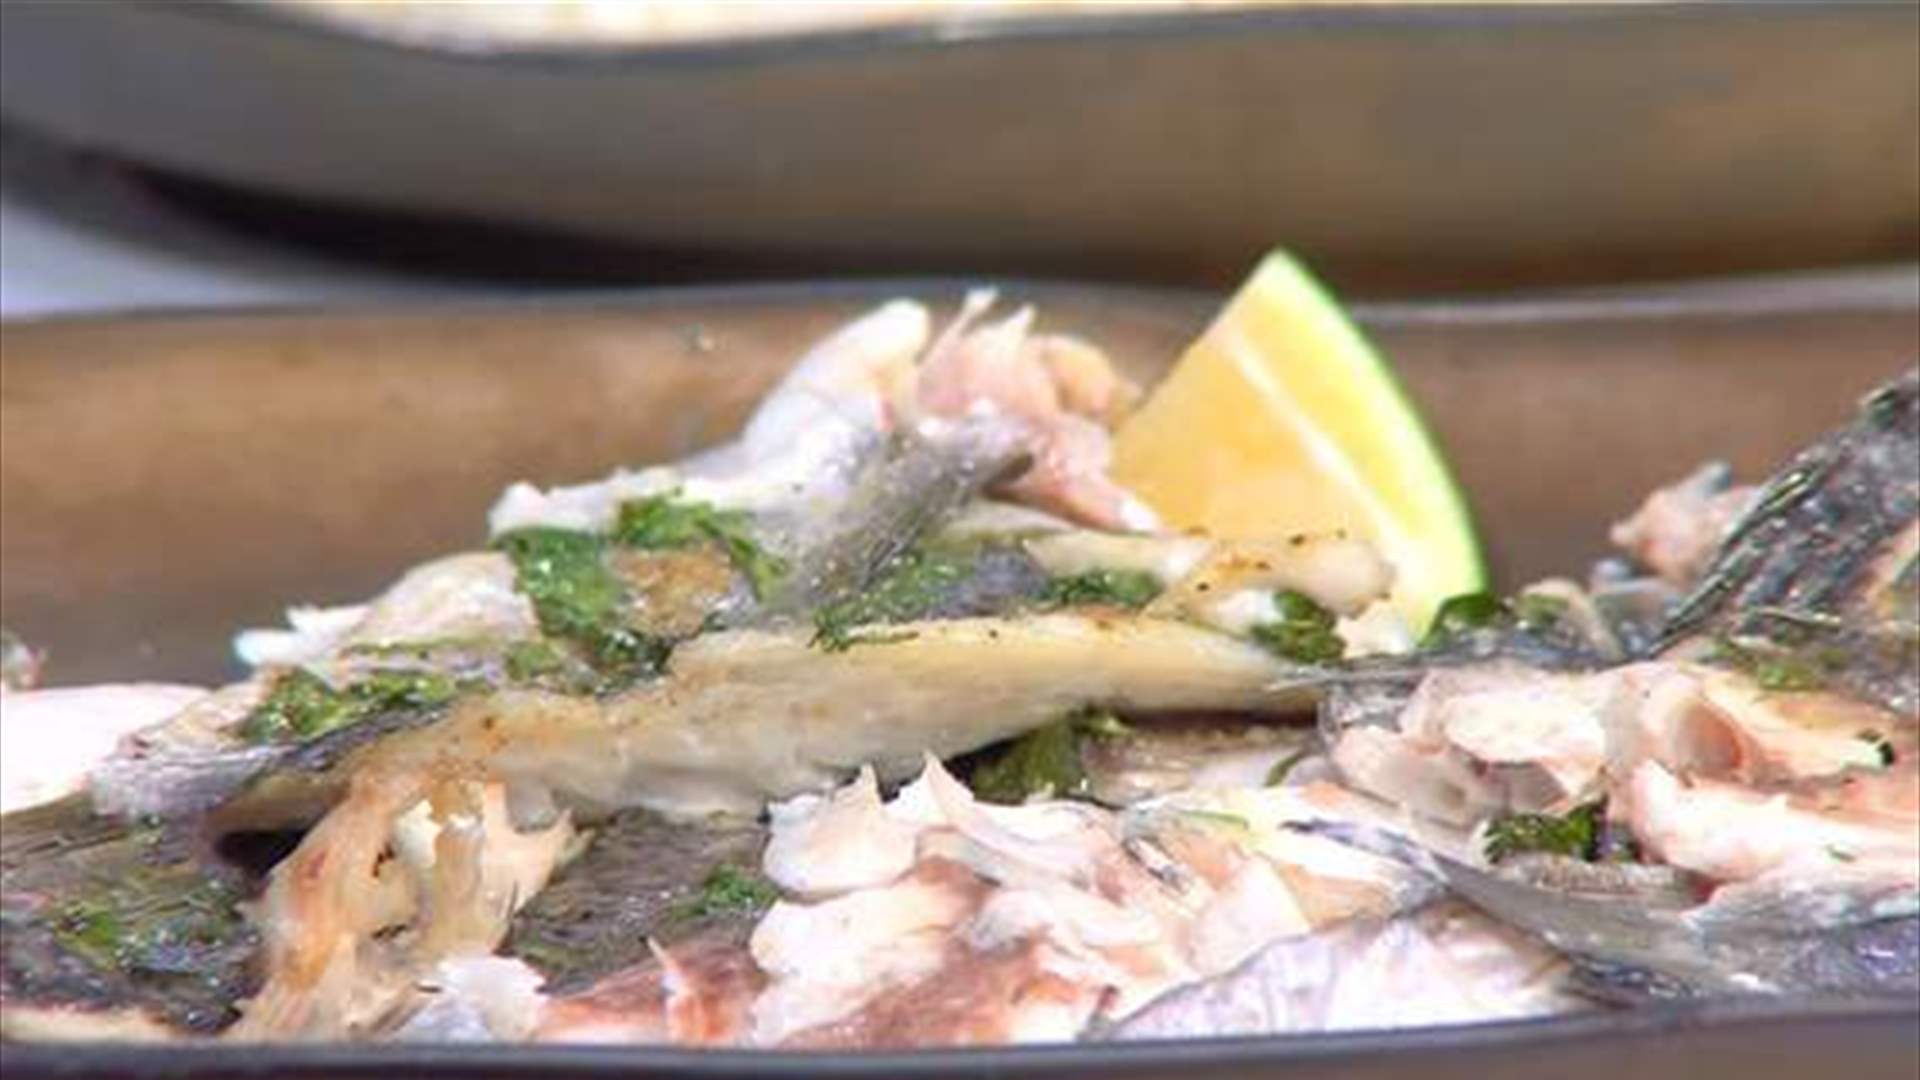 إلى عشاق المأكولات البحرية... إليكم وصفة &quot;السمك مع صلصة خاصّة&quot; (فيديو)